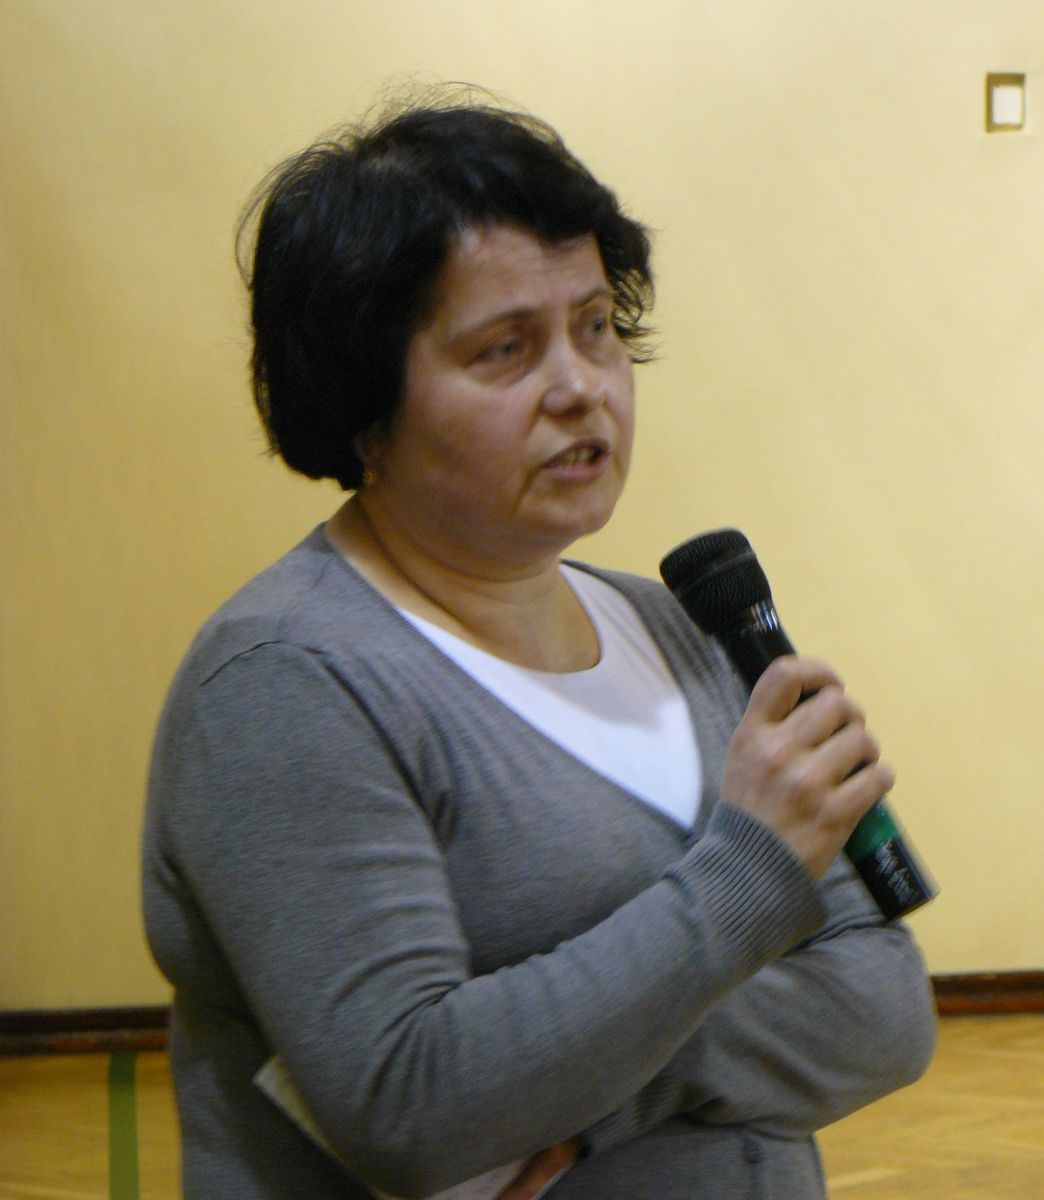 Mirosława Manowska